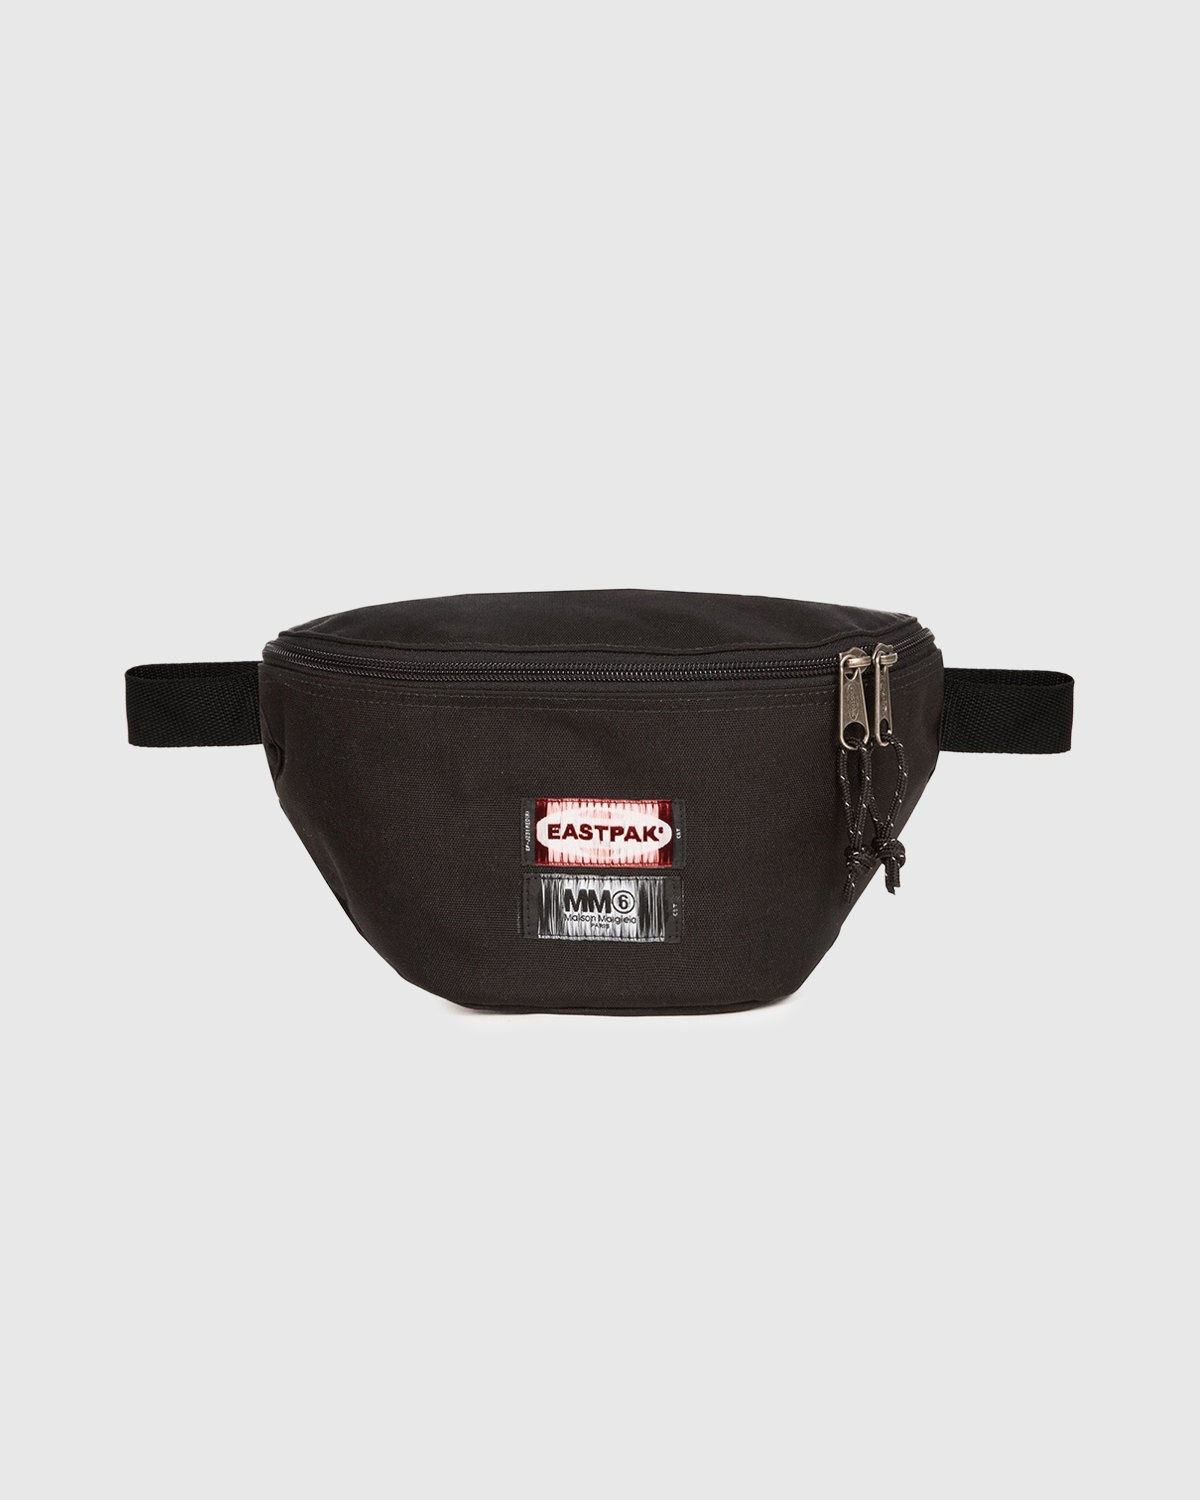 MM6 Maison Margiela x Eastpak – Belt Bag Black - Bags - Black - Image 1